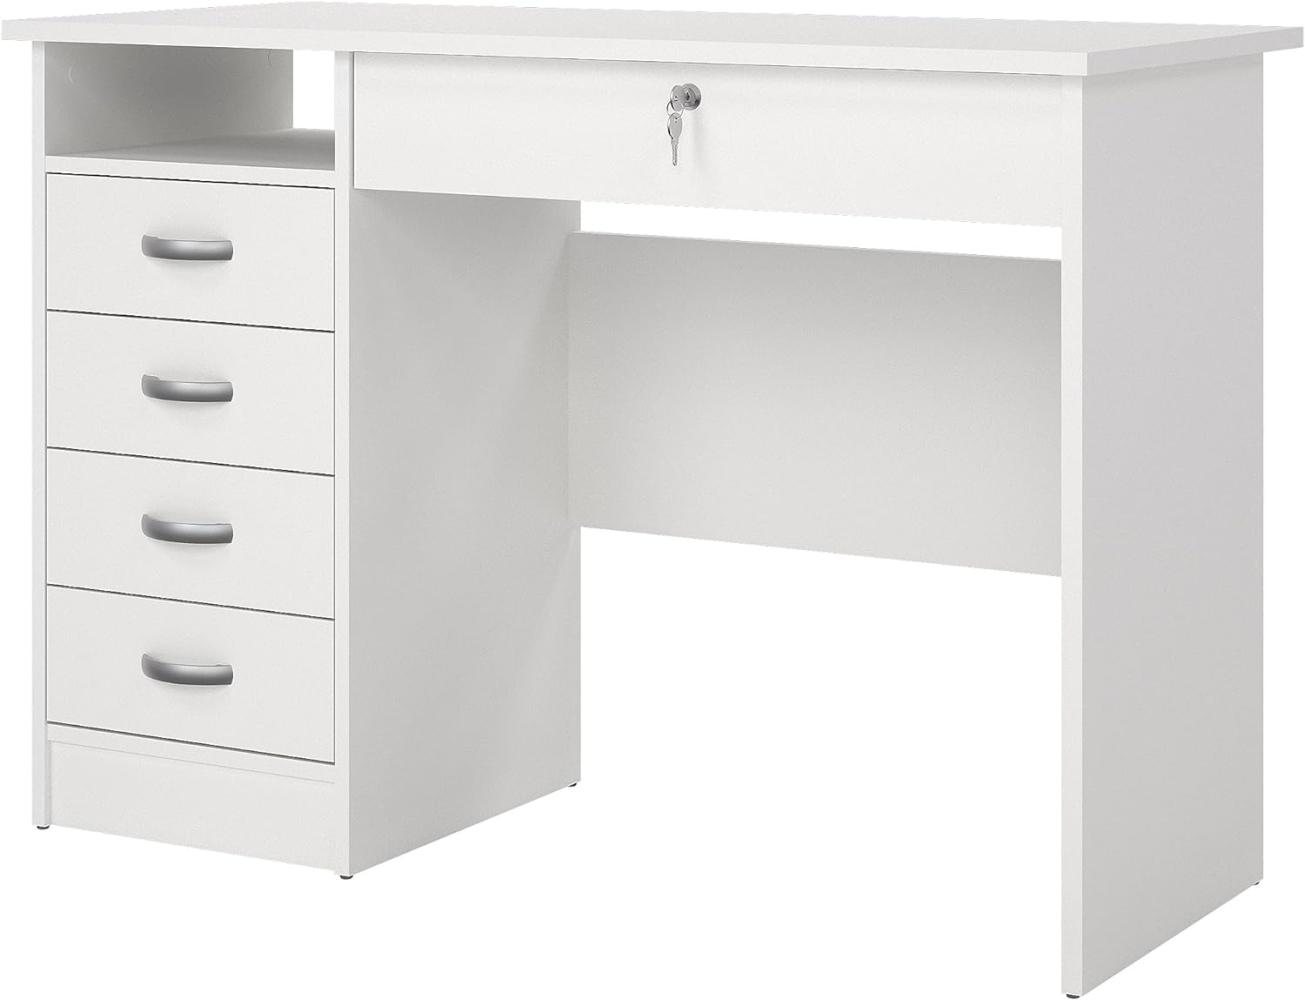 Schreibtisch mit fünf Schubladen, weiße Farbe, Maße 109 x 75 x 48 cm Bild 1